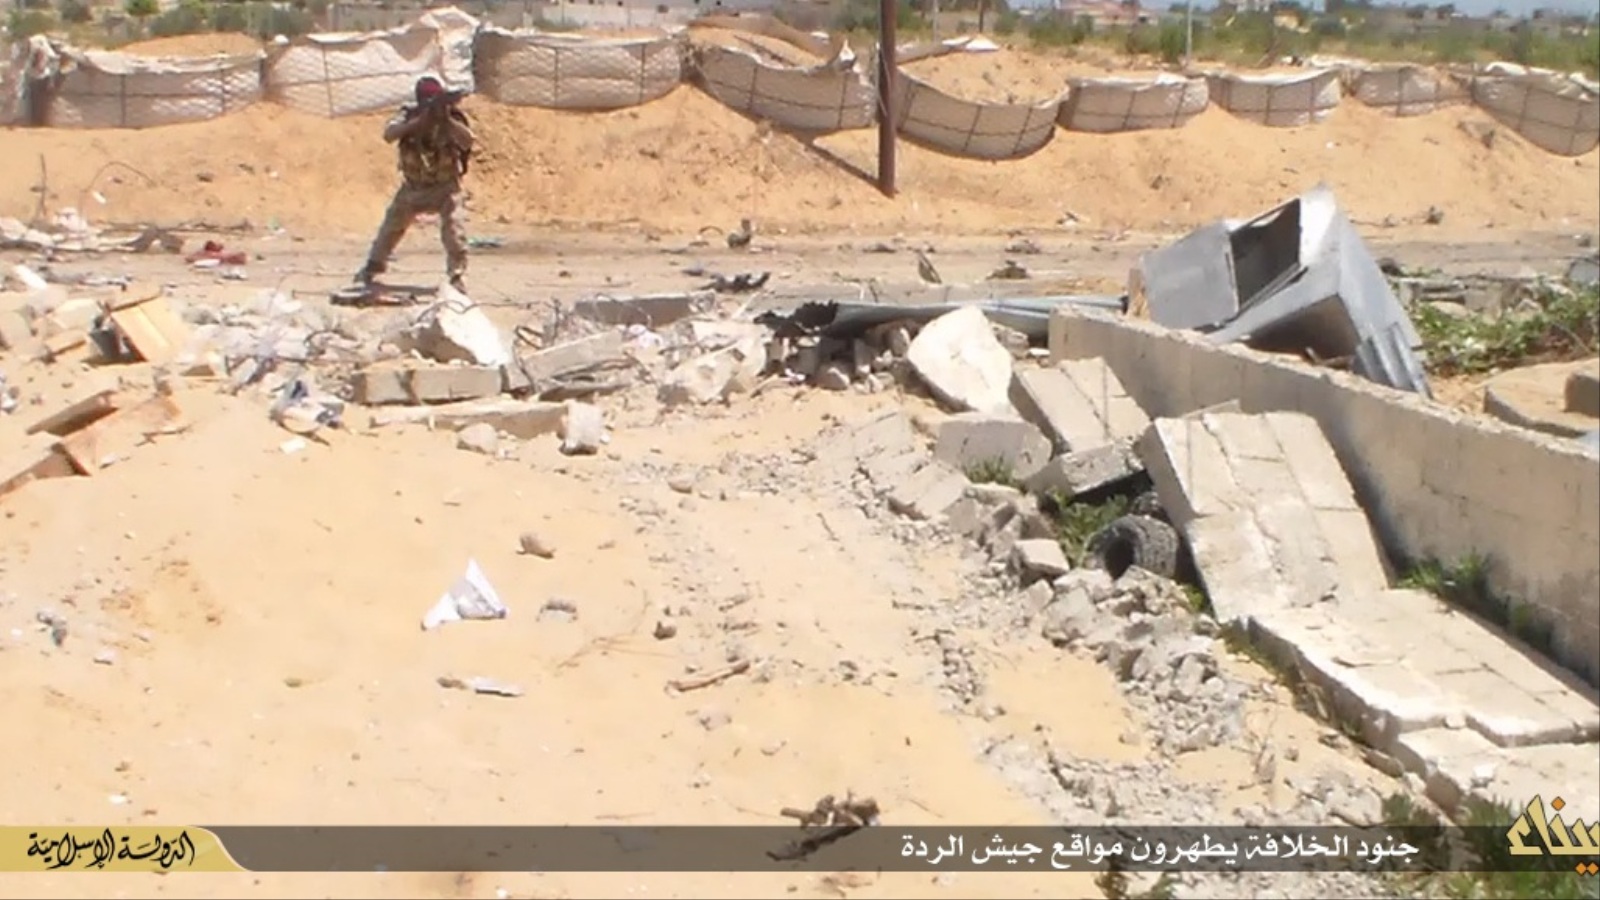 ‪ولاية سيناء نشرت صورة لأحد مقاتليها أثناء اقتحام نقطة تفتيش للجيش‬  (الجزيرة)